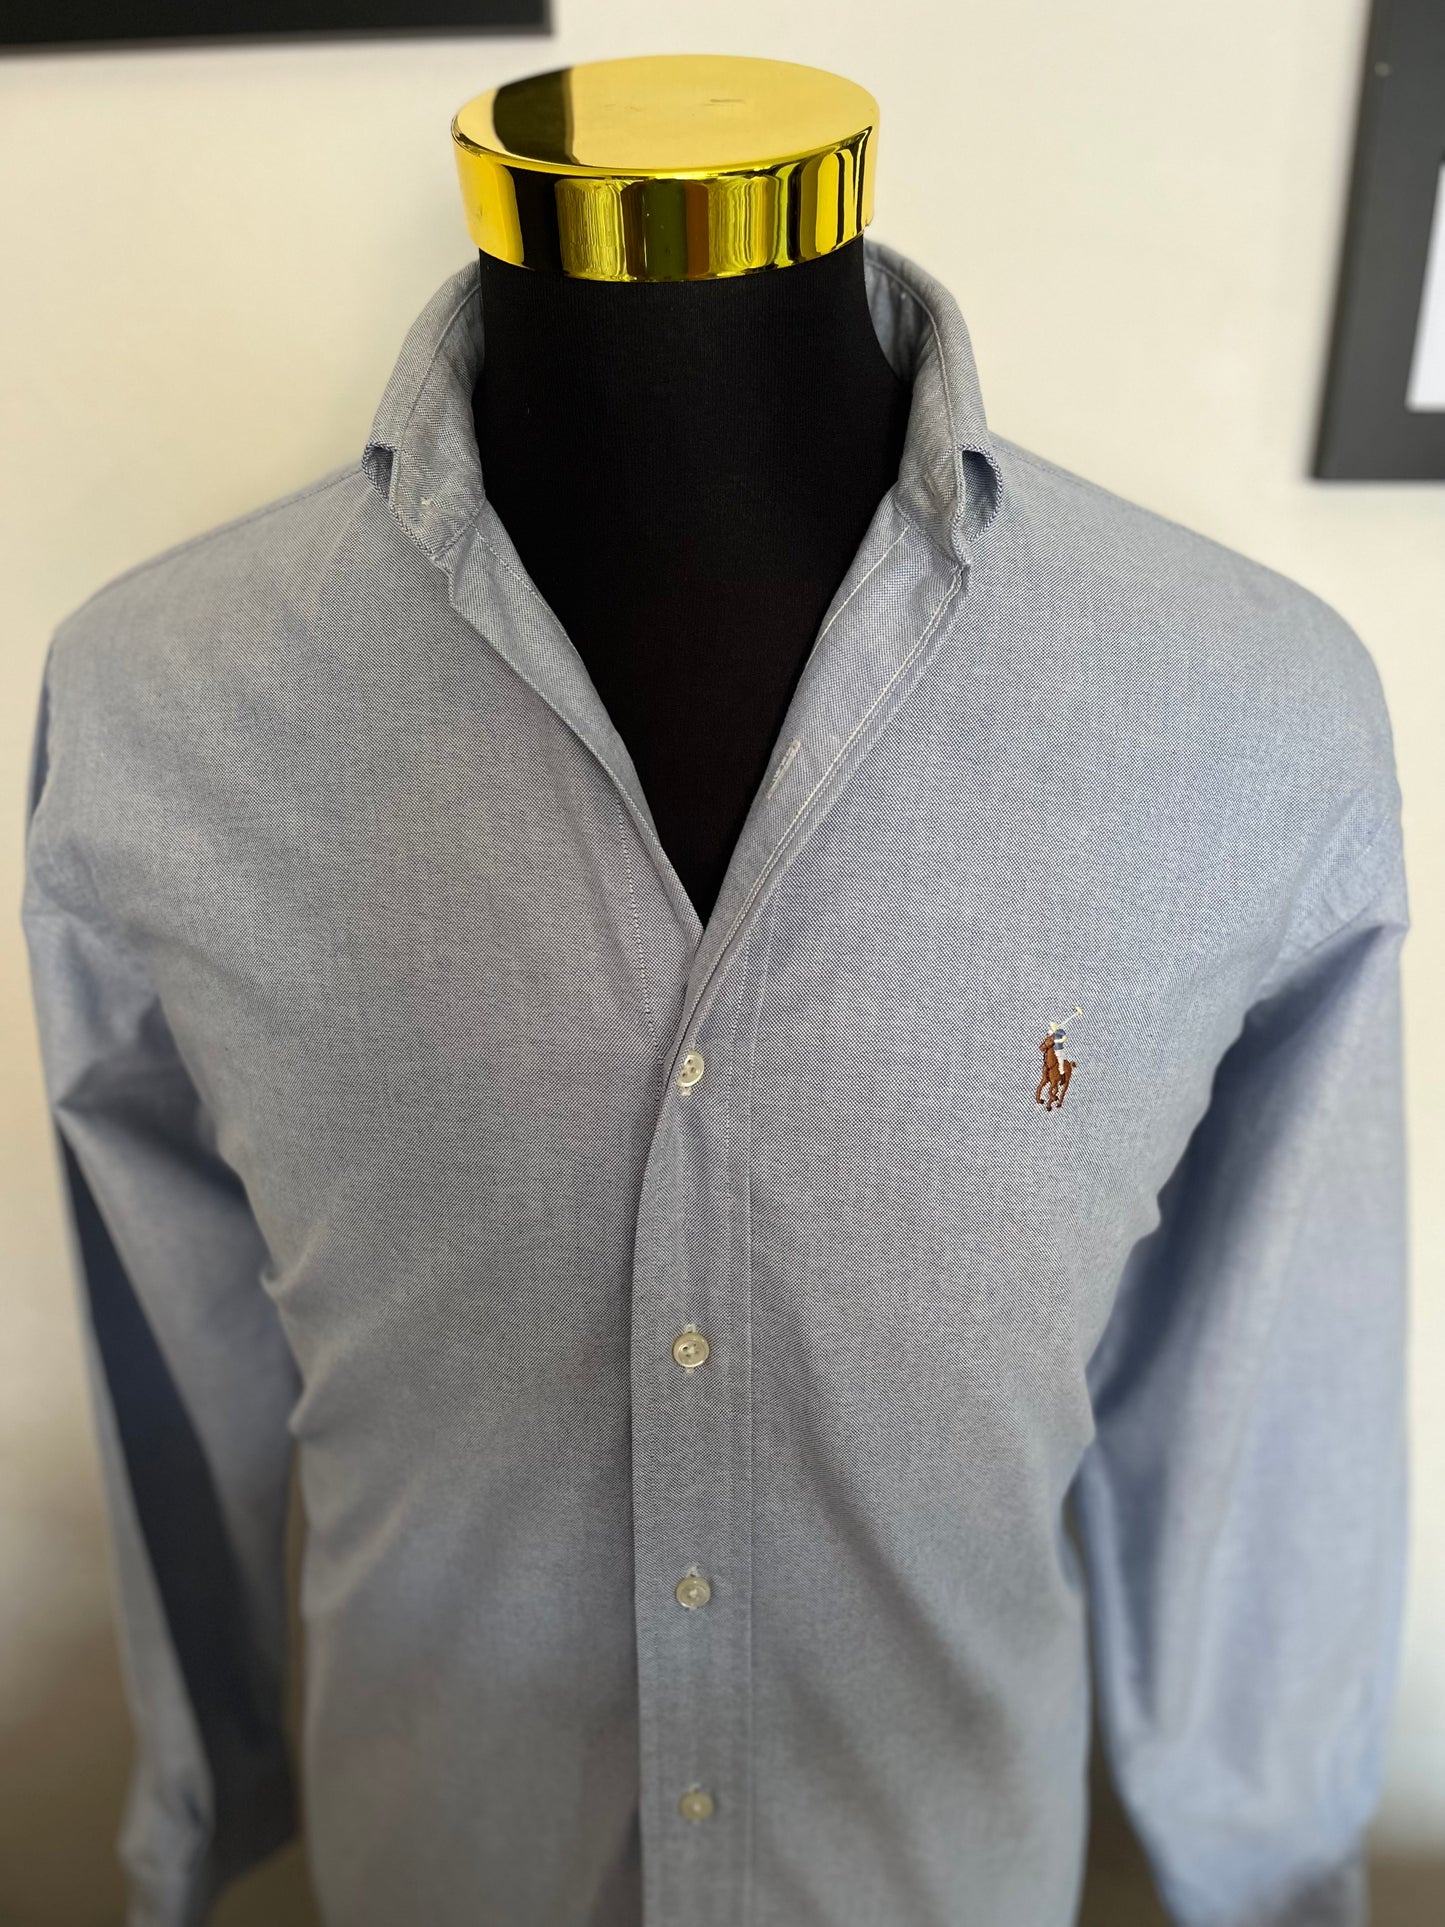 Ralph Lauren 100% Cotton Blue Button Down Shirt Size L Classic Fit, 15/34